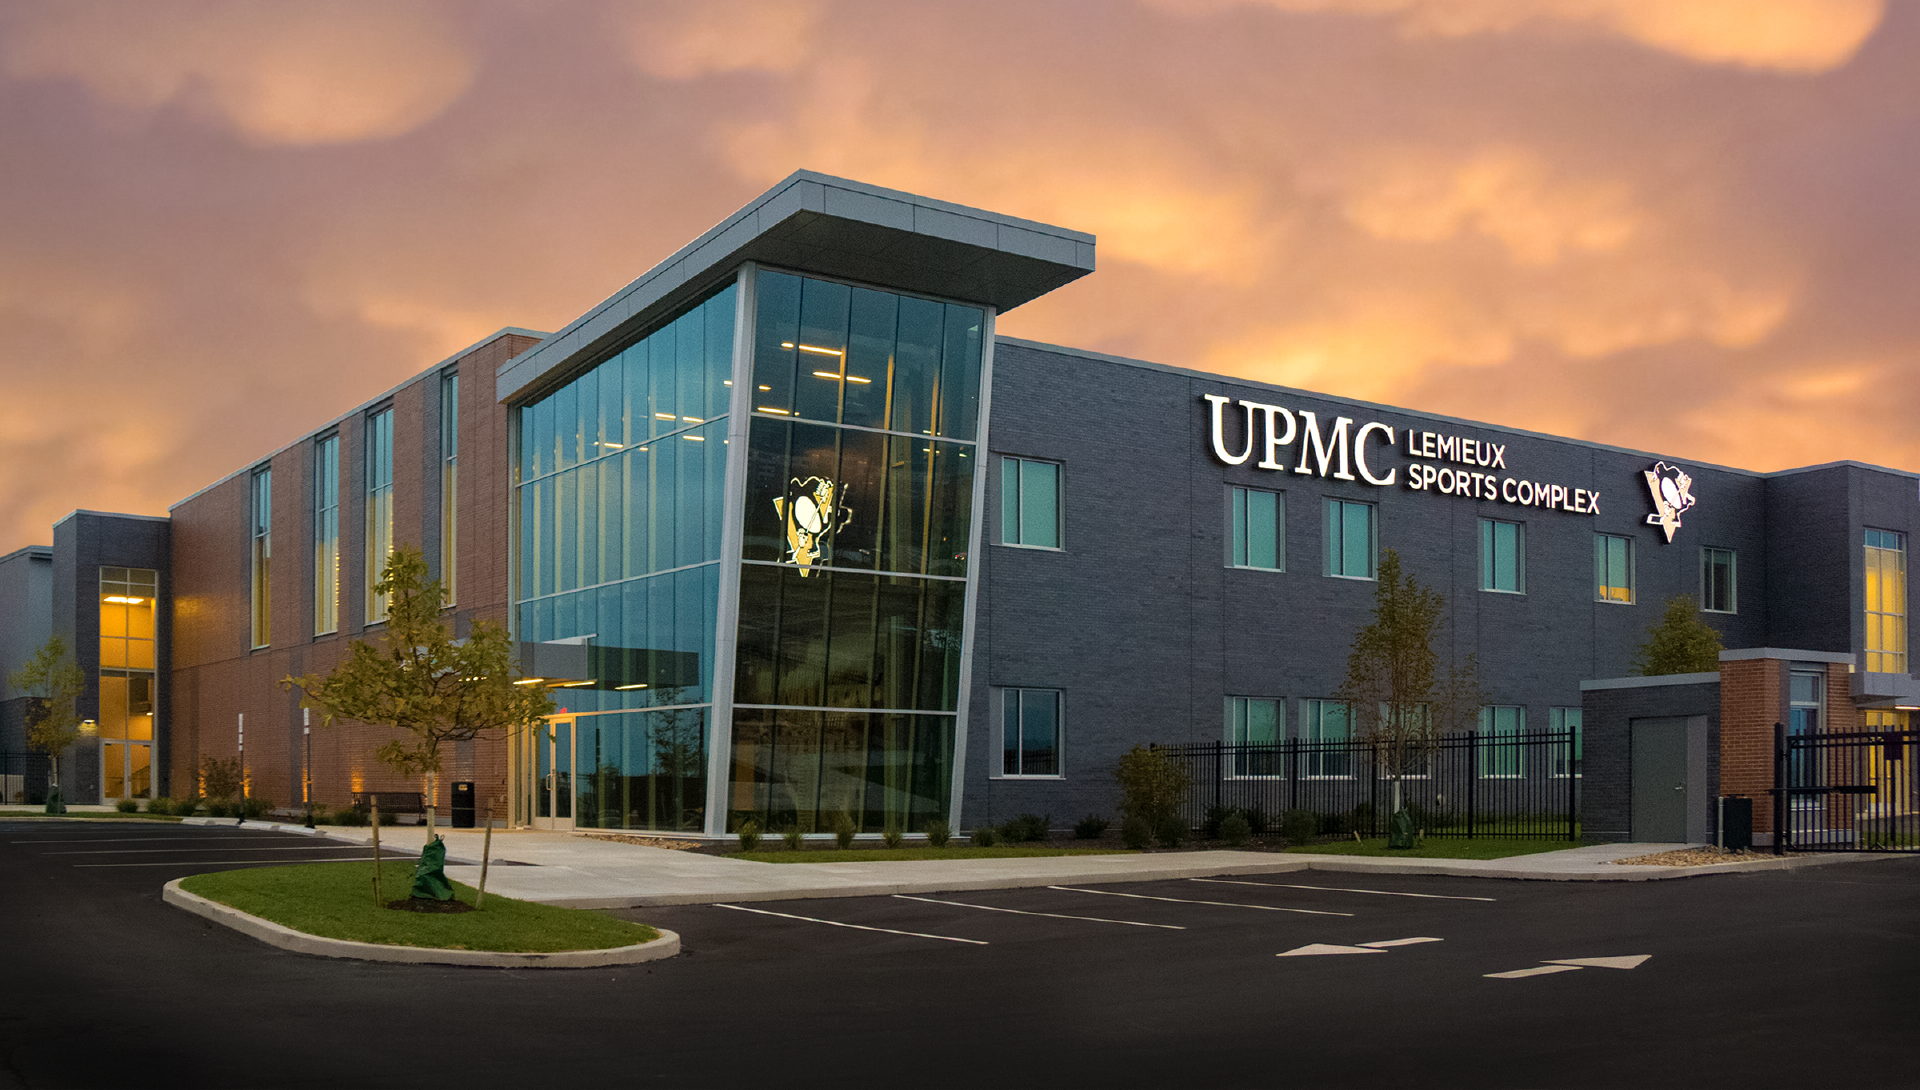 UPMC Lemieux Sports Complex